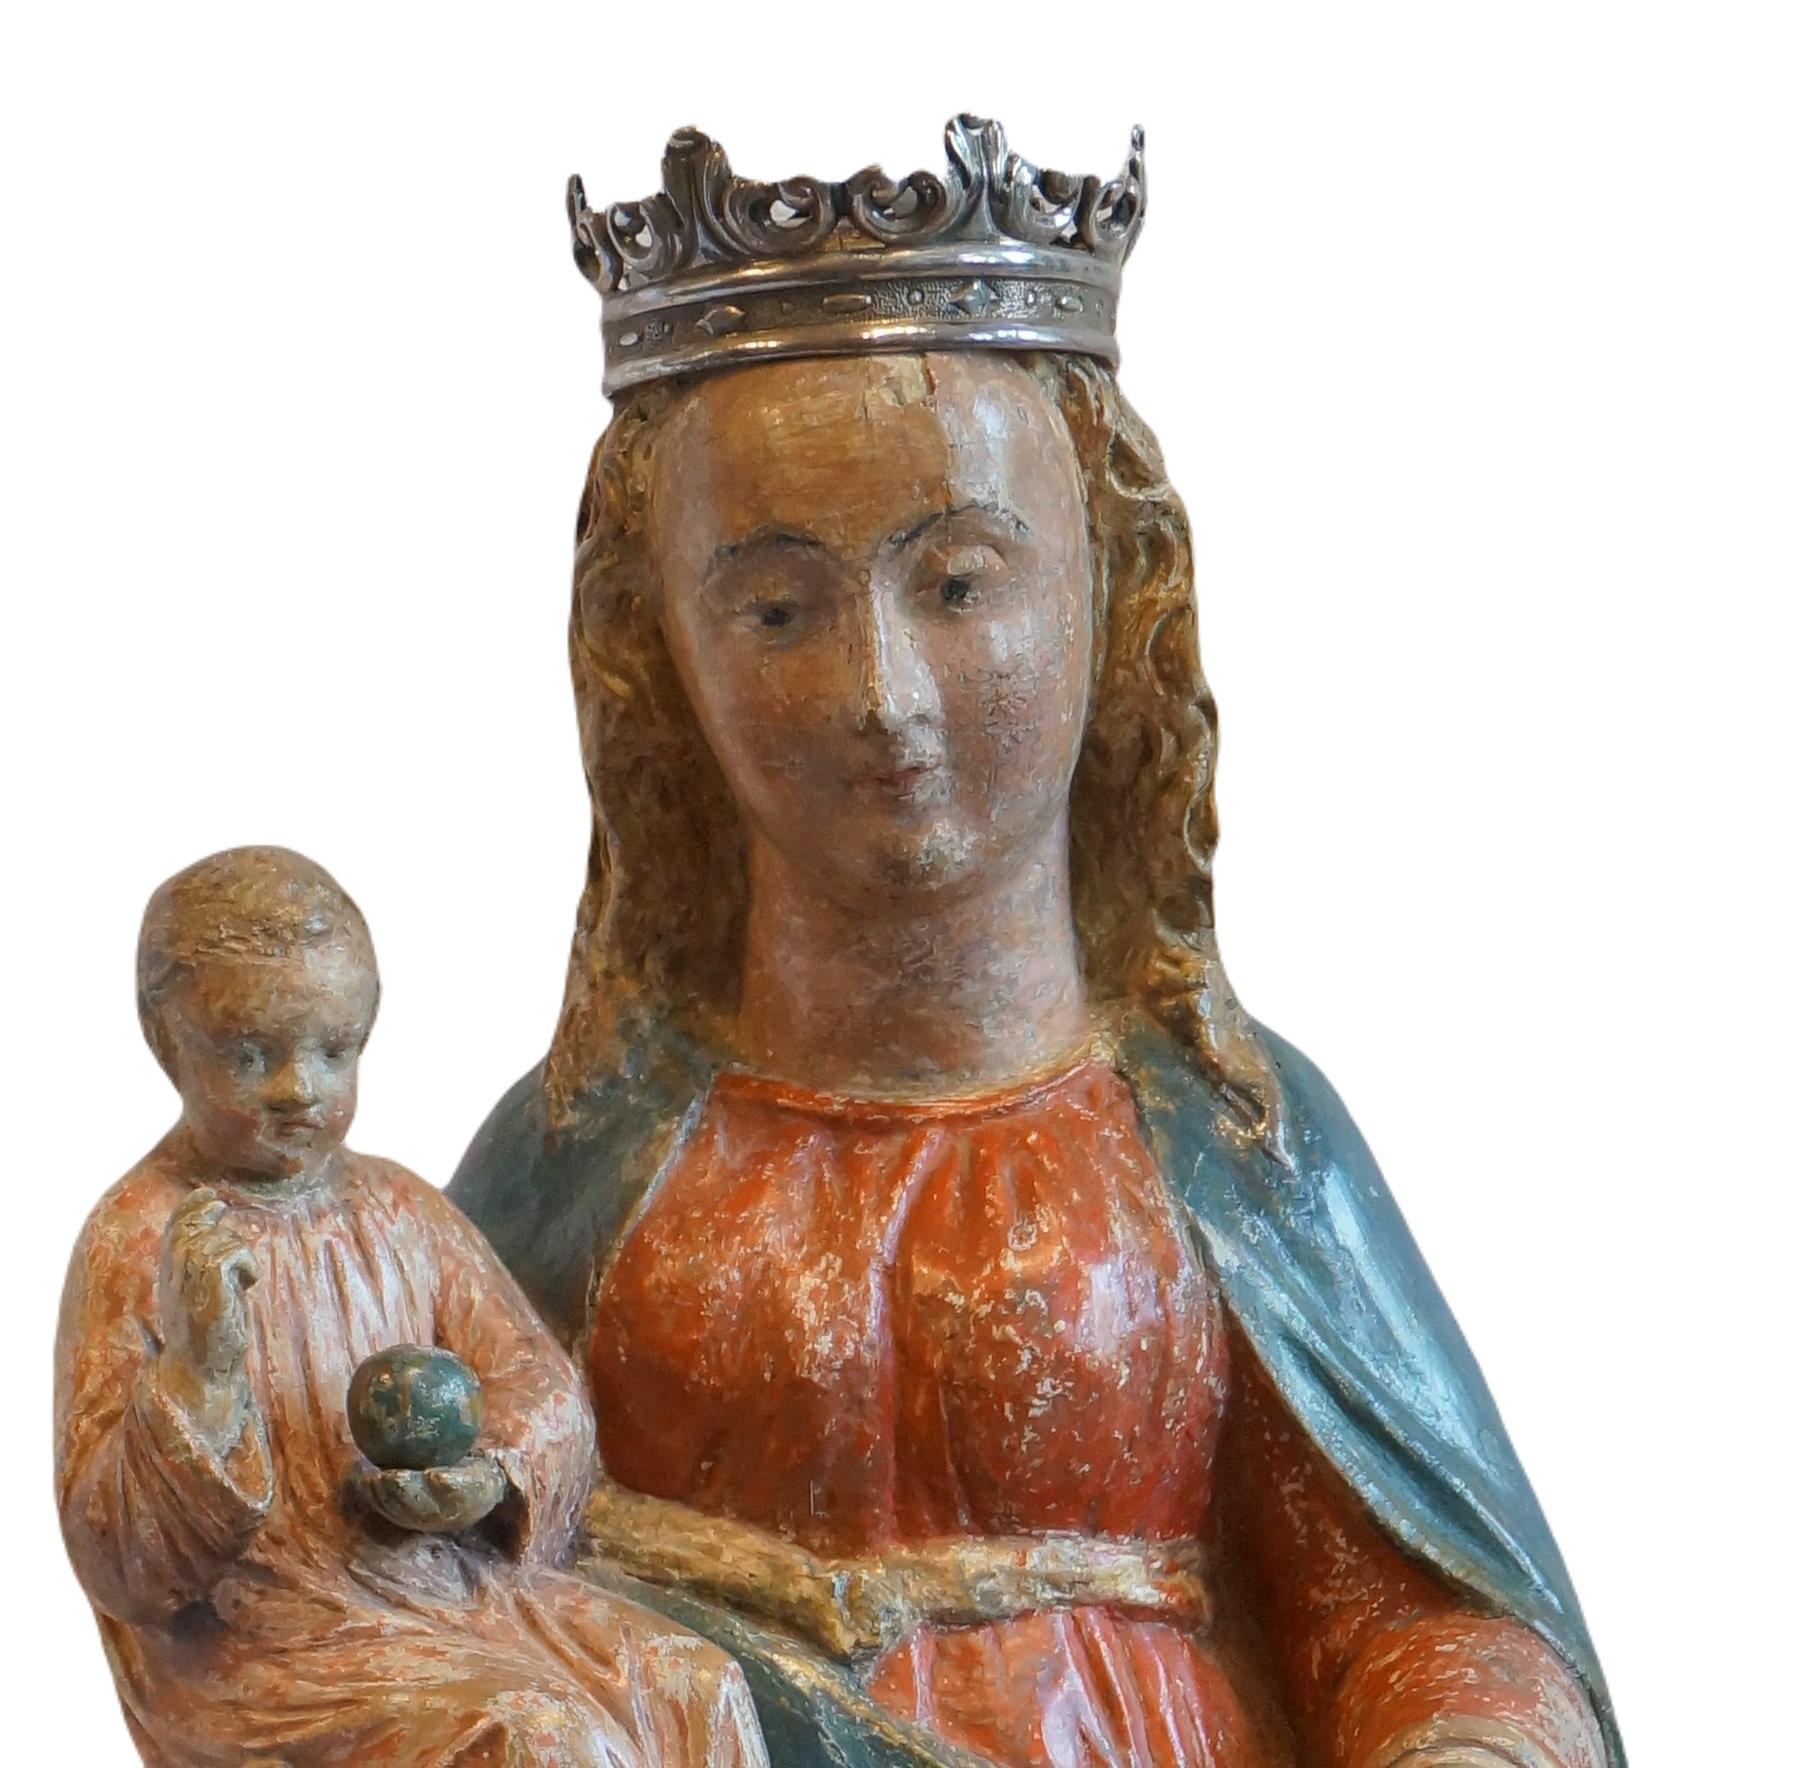 Skulptur der Mutter Maria mit dem Jesuskind.
Maria hält das Kind an ihrer rechten Hand. Jesus macht eine segnende Geste und trägt einen kleinen Globus. (ein Zeichen für seine Macht über die Welt)
Mutter Maria hält eine Weintraube in ihrer linken